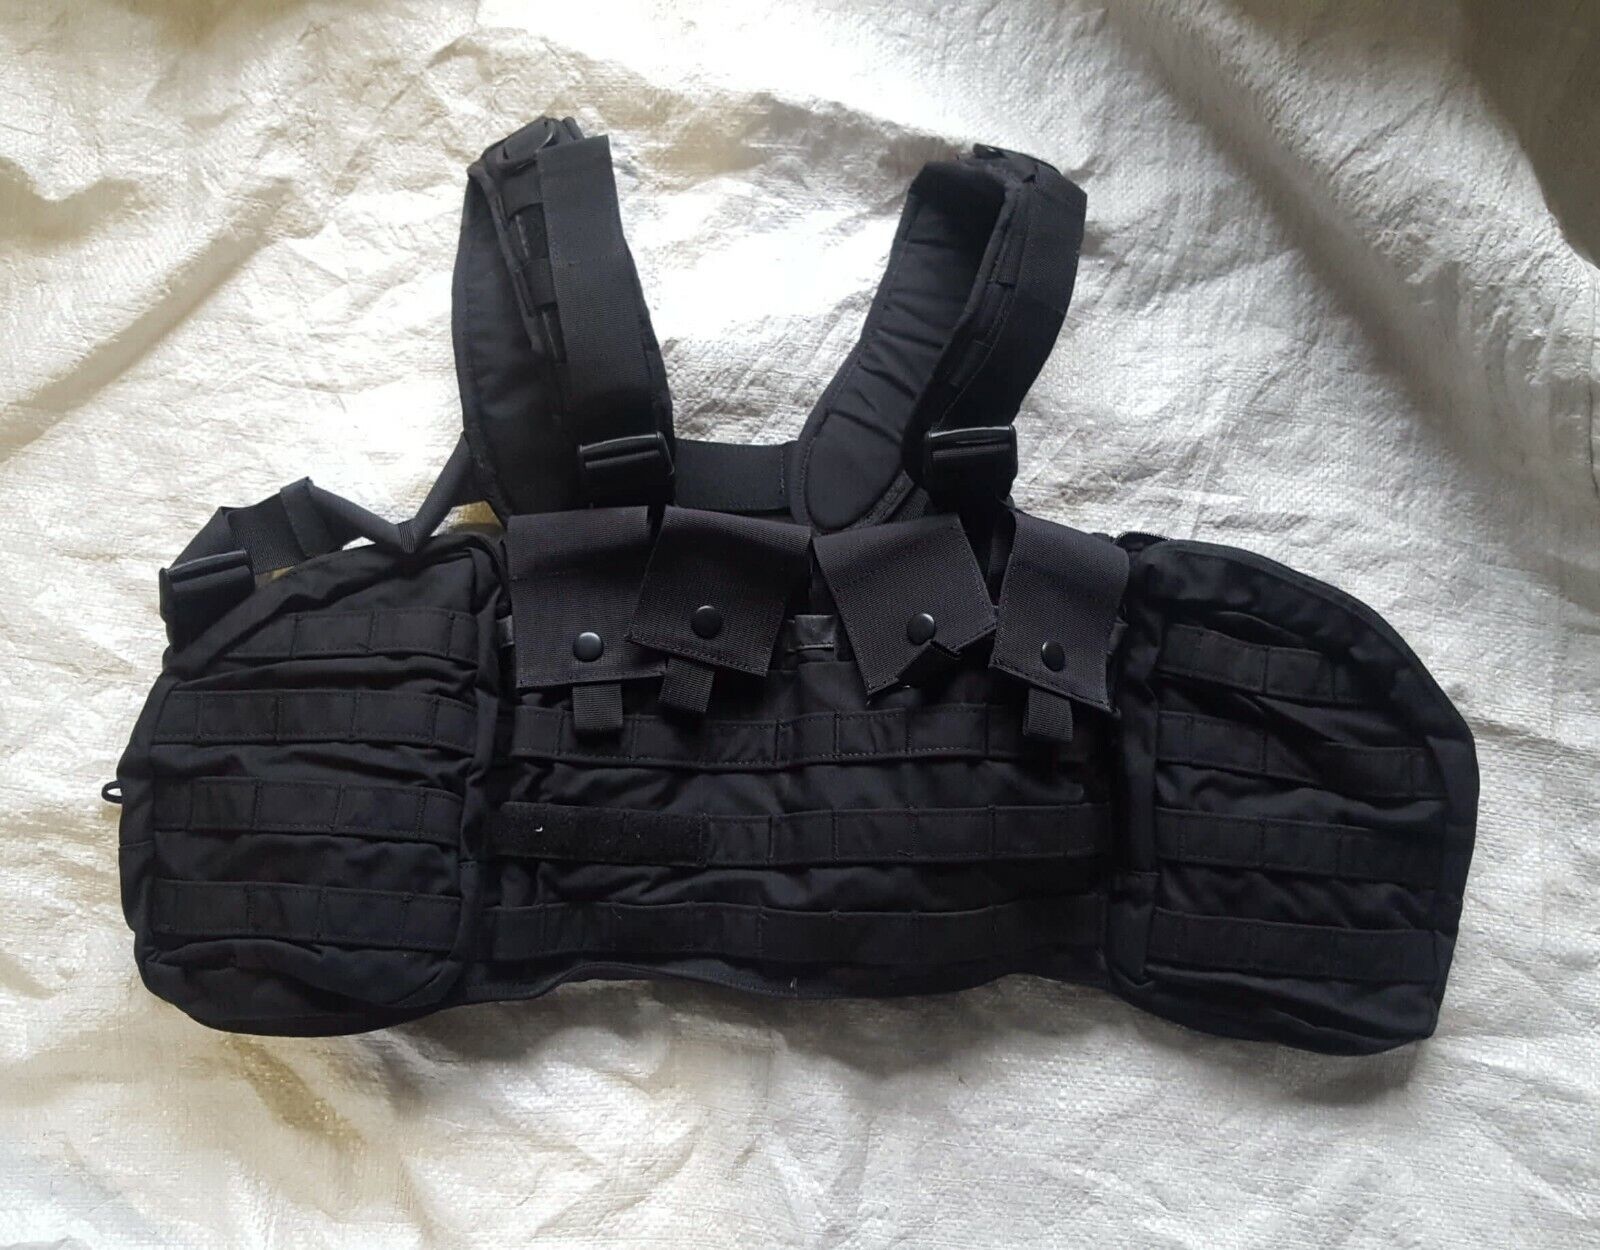 j-tech mk2 vest set (black)